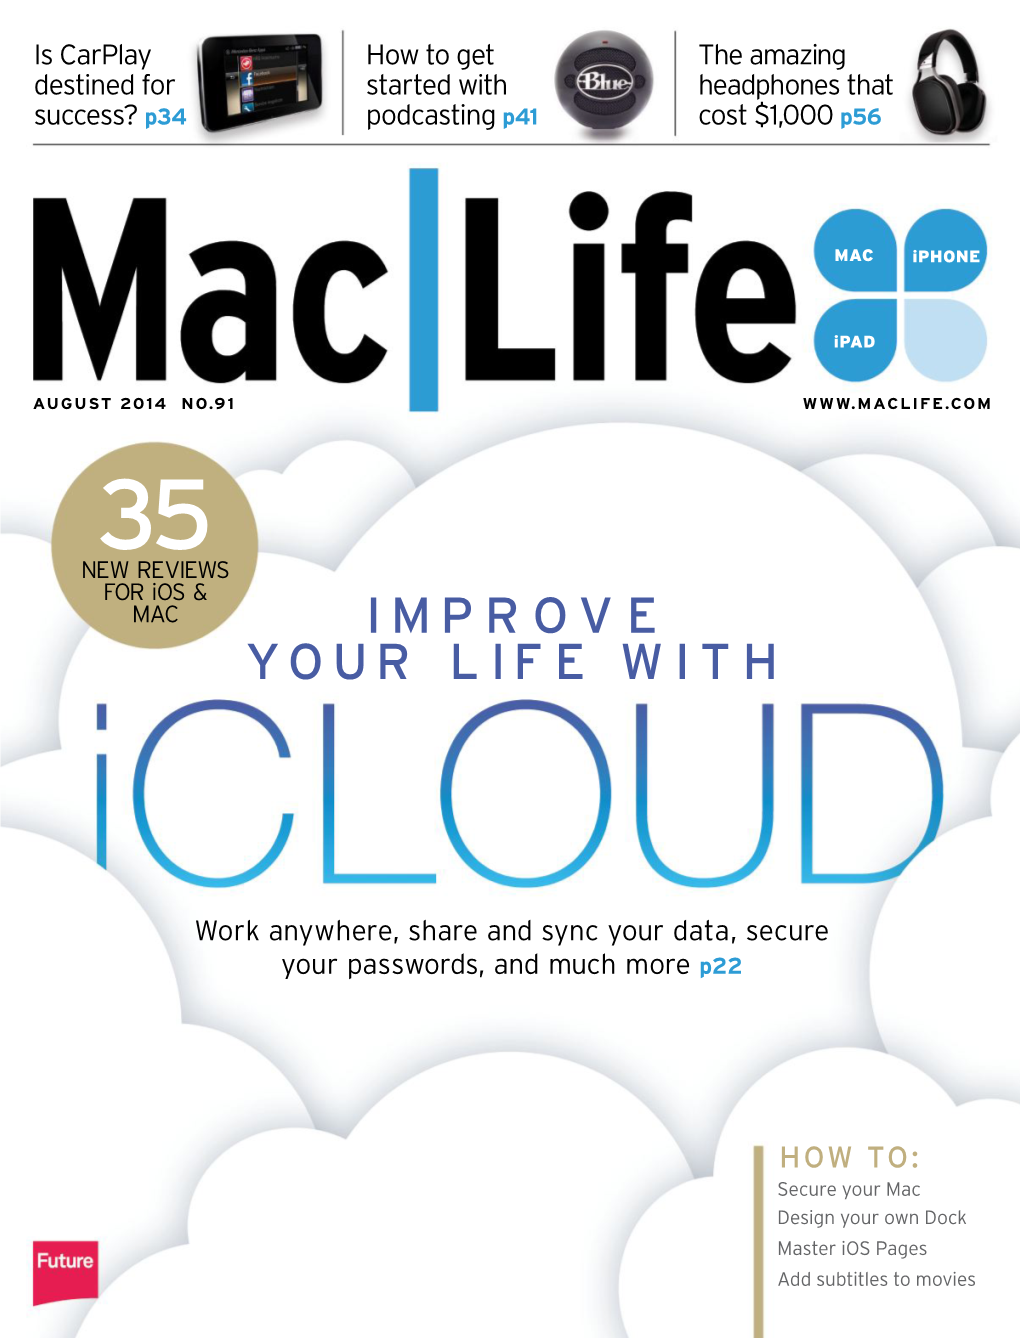 Maclife.Com 35 New Reviews for Ios & Mac I M P R O V E Your Life With